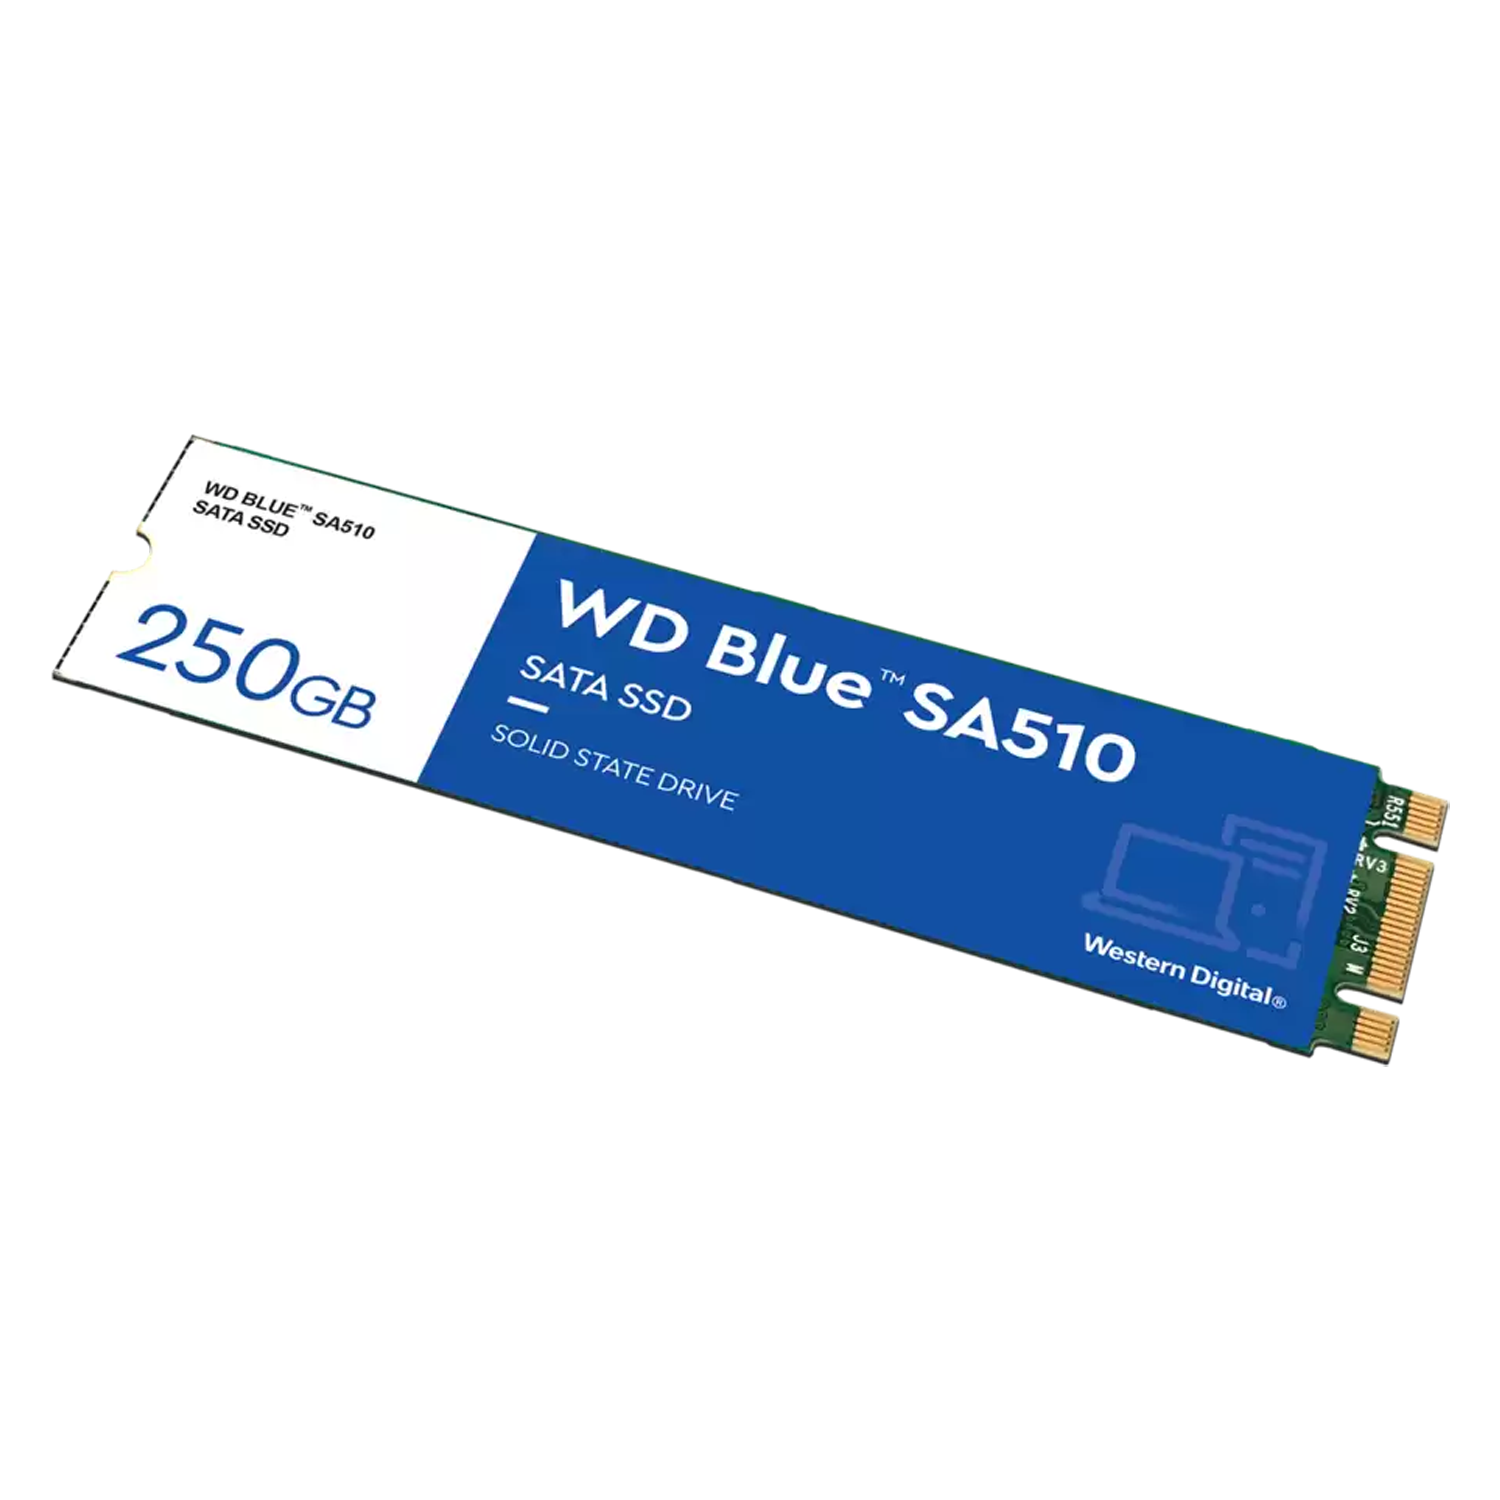 SSD M.2 Western Digital SA510 Blue 240GB / SATA 3 - (WDS250G3B0B)
